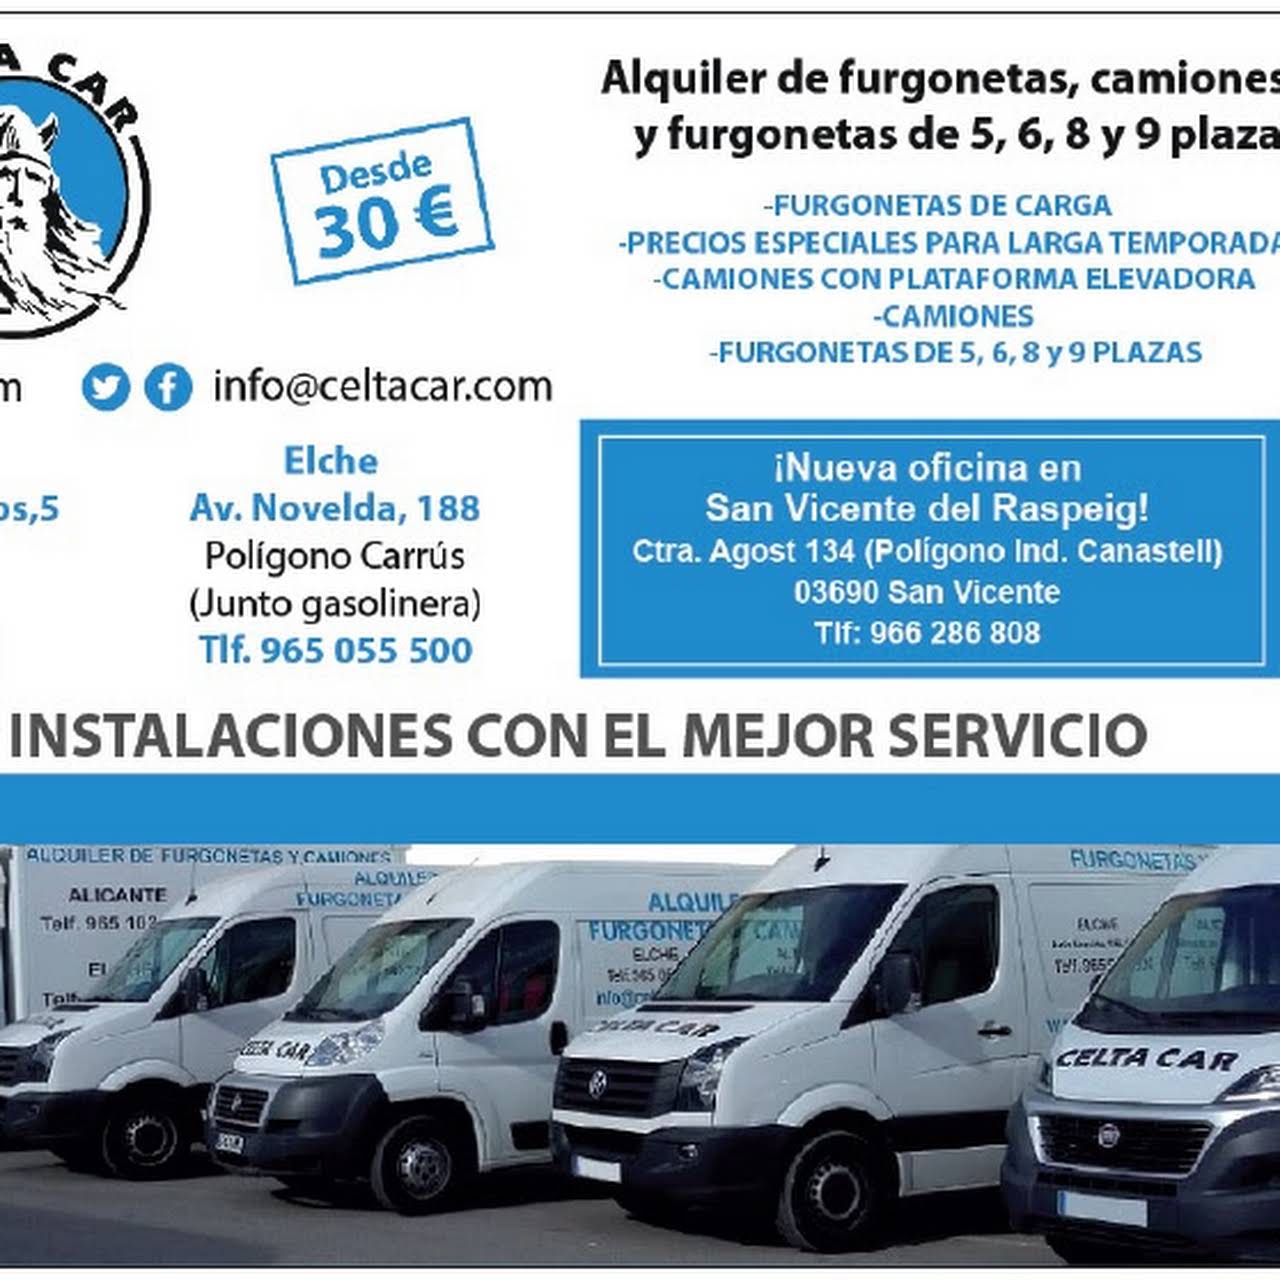 Delegación Inferir Mirar fijamente Celta Car S.L. Alquiler furgonetas y camiones Elche - Agencia De Alquiler  De Furgonetas en Elche